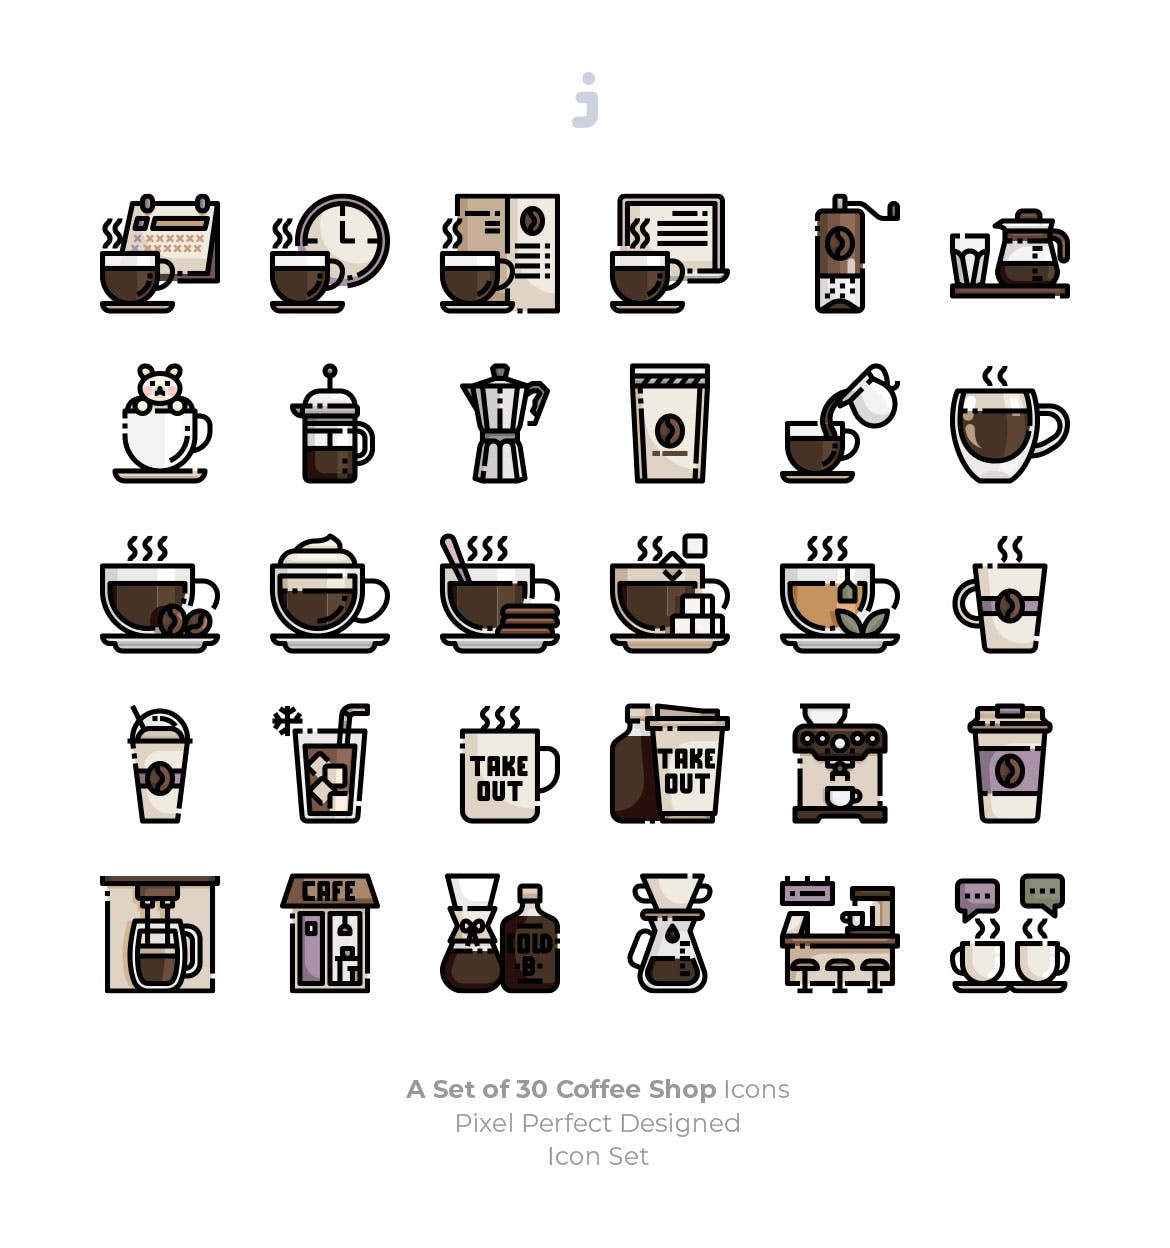 30枚咖啡/咖啡店矢量素材库精选图标素材 30 Coffee Shop Icons插图(1)